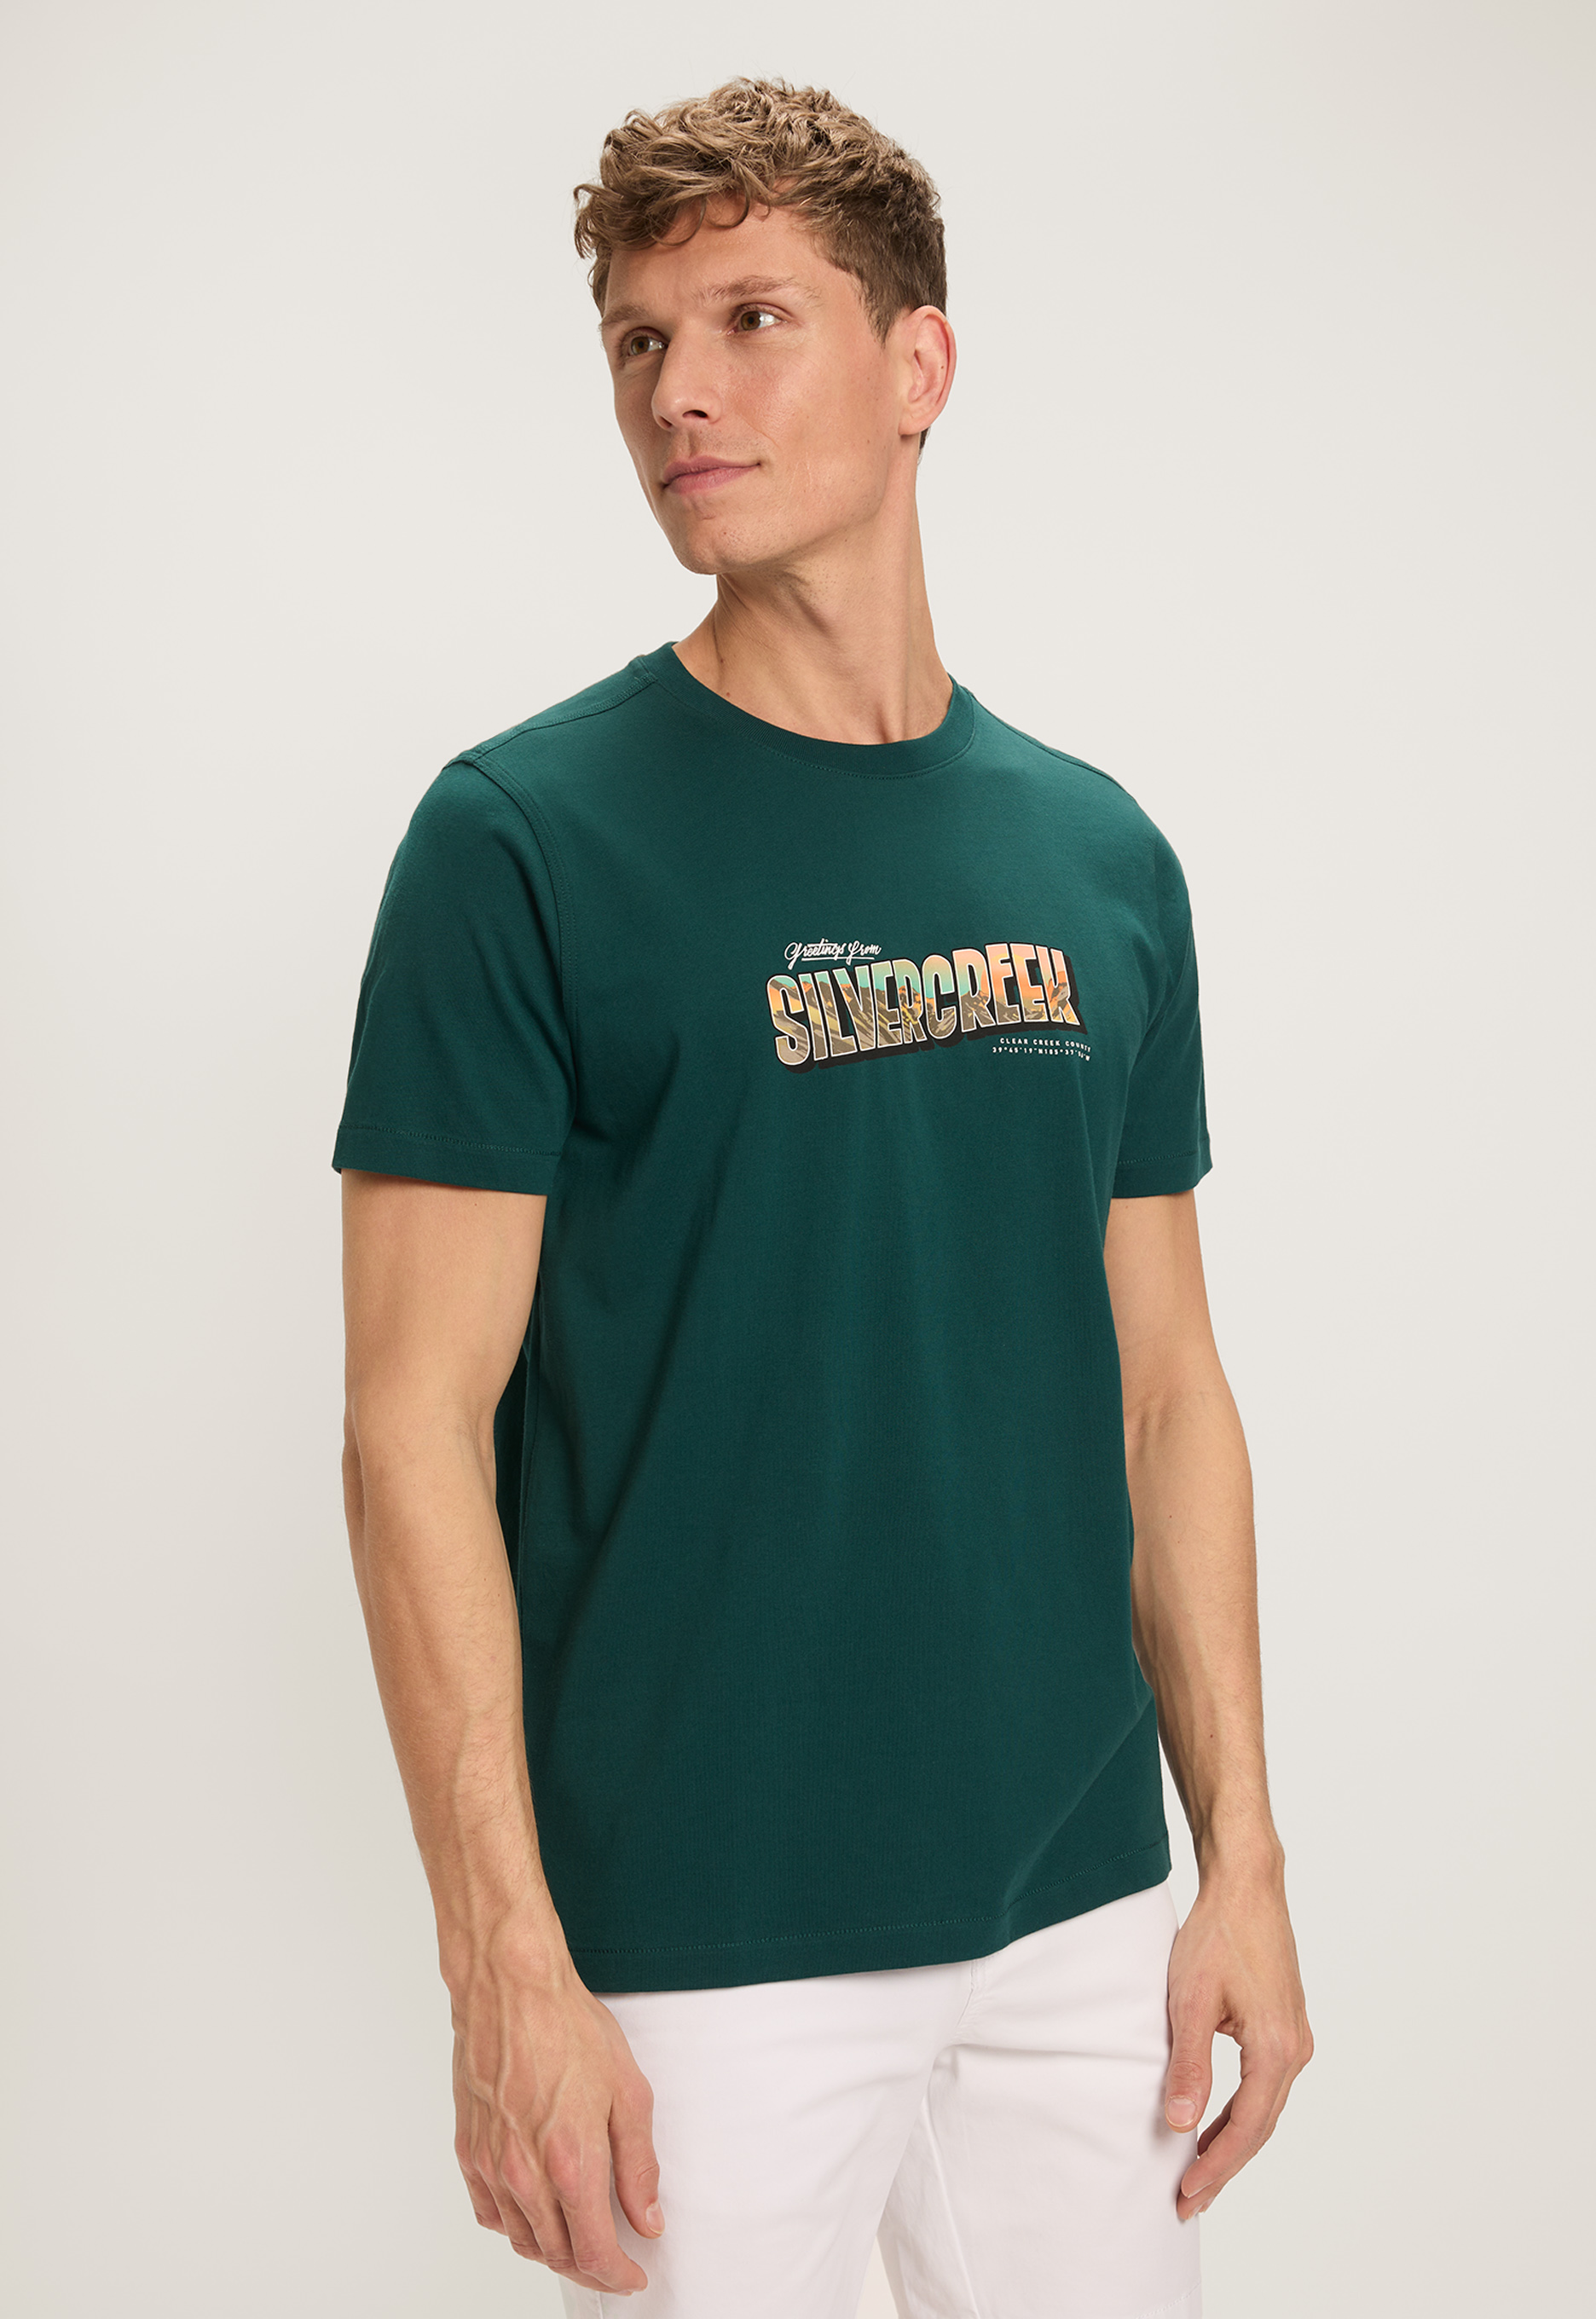 Silvercreek Florida T-shirt